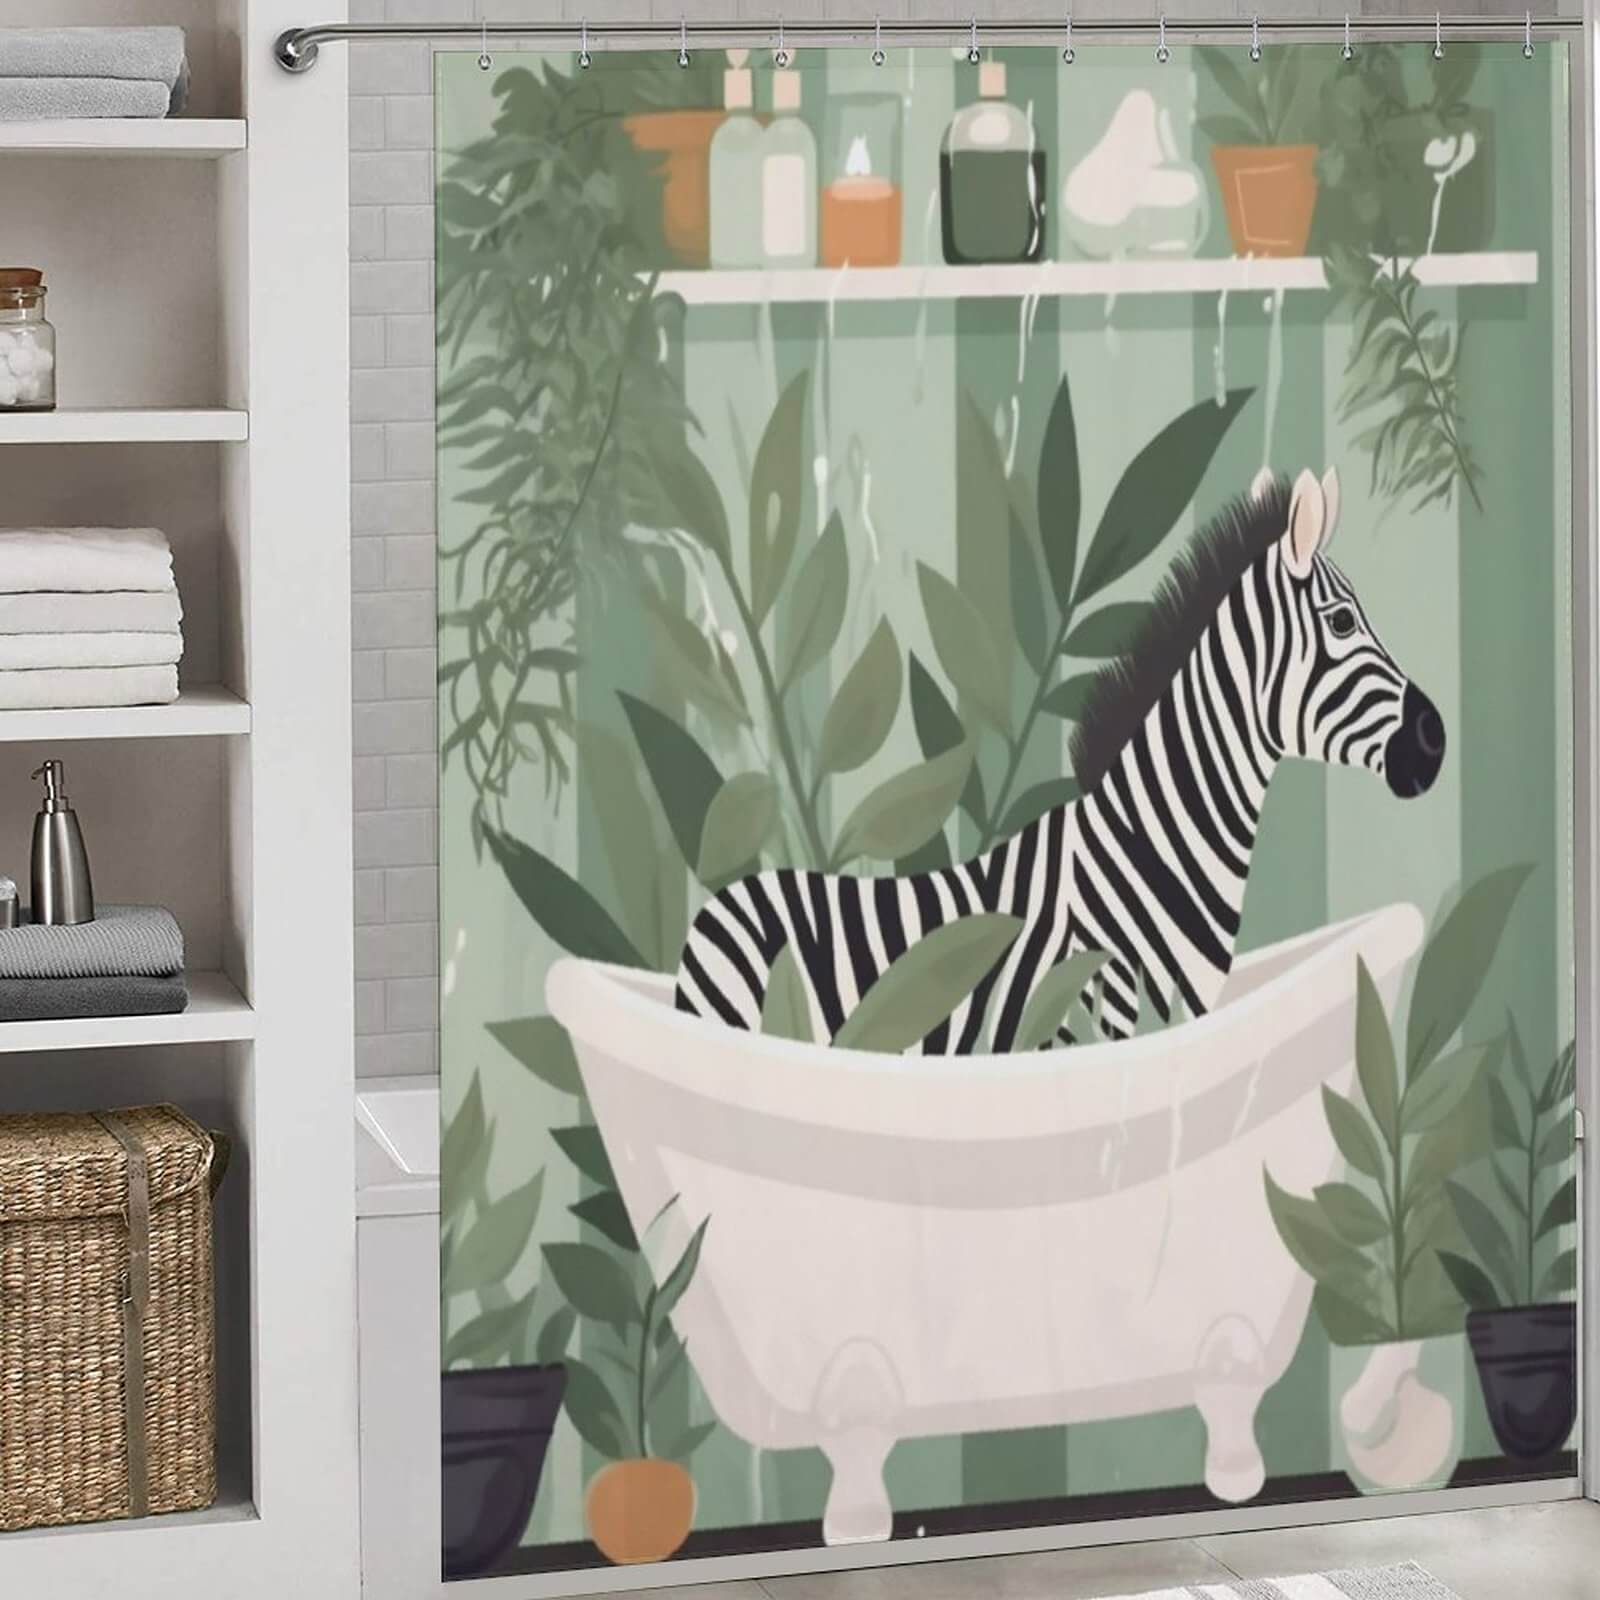 A Funny Zebra Shower Curtain-Cottoncat featuring a zebra in a tub.